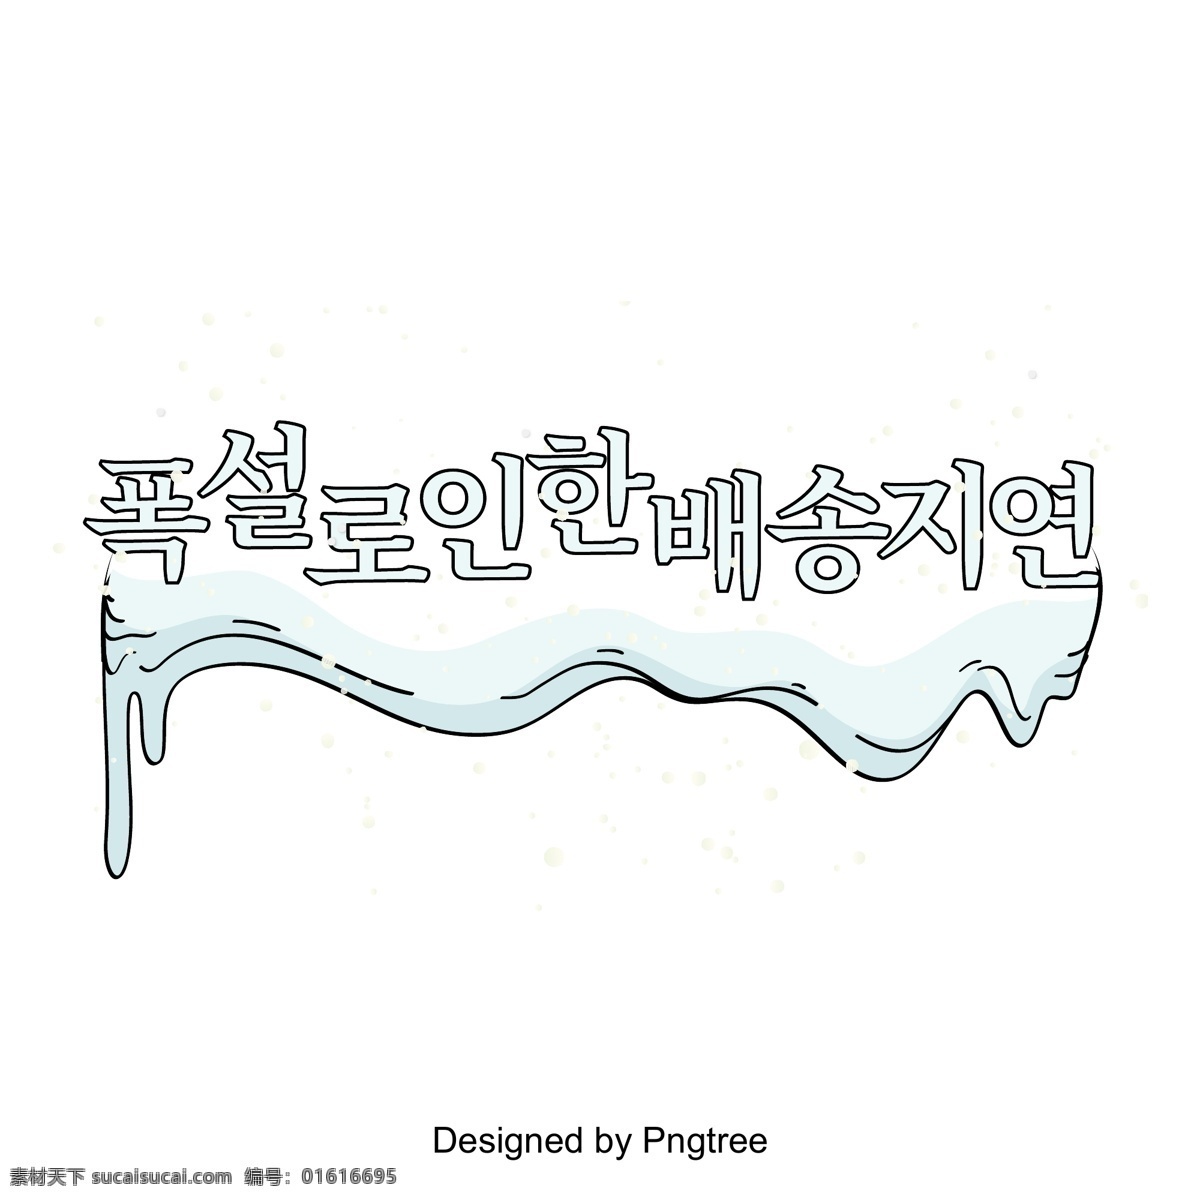 大雪 导致 韩国 字体 分布 延迟 字形 季节变换 标题 韩文 现场 中文字体 冬季主题 字体设计 字体的效果 韩国字体